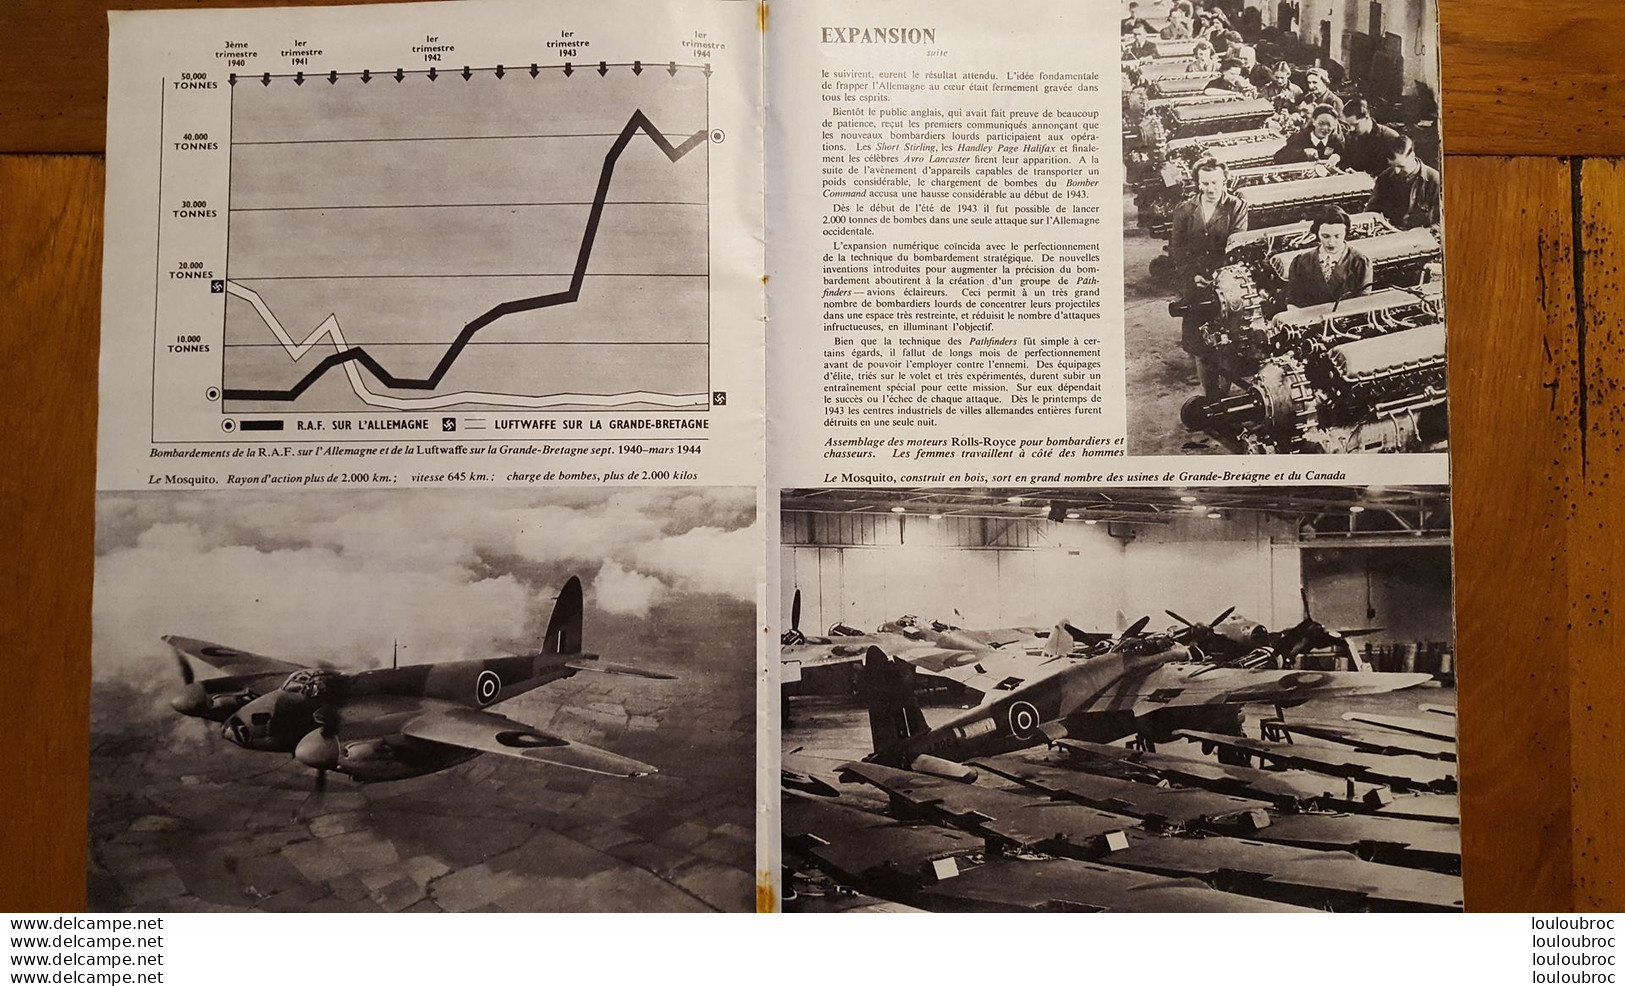 LES AILES DE LA VICTOIRE  LA ROYAL AIR FORCE FRAPPE L'ALLEMAGNE 32 PAGES - 1939-45